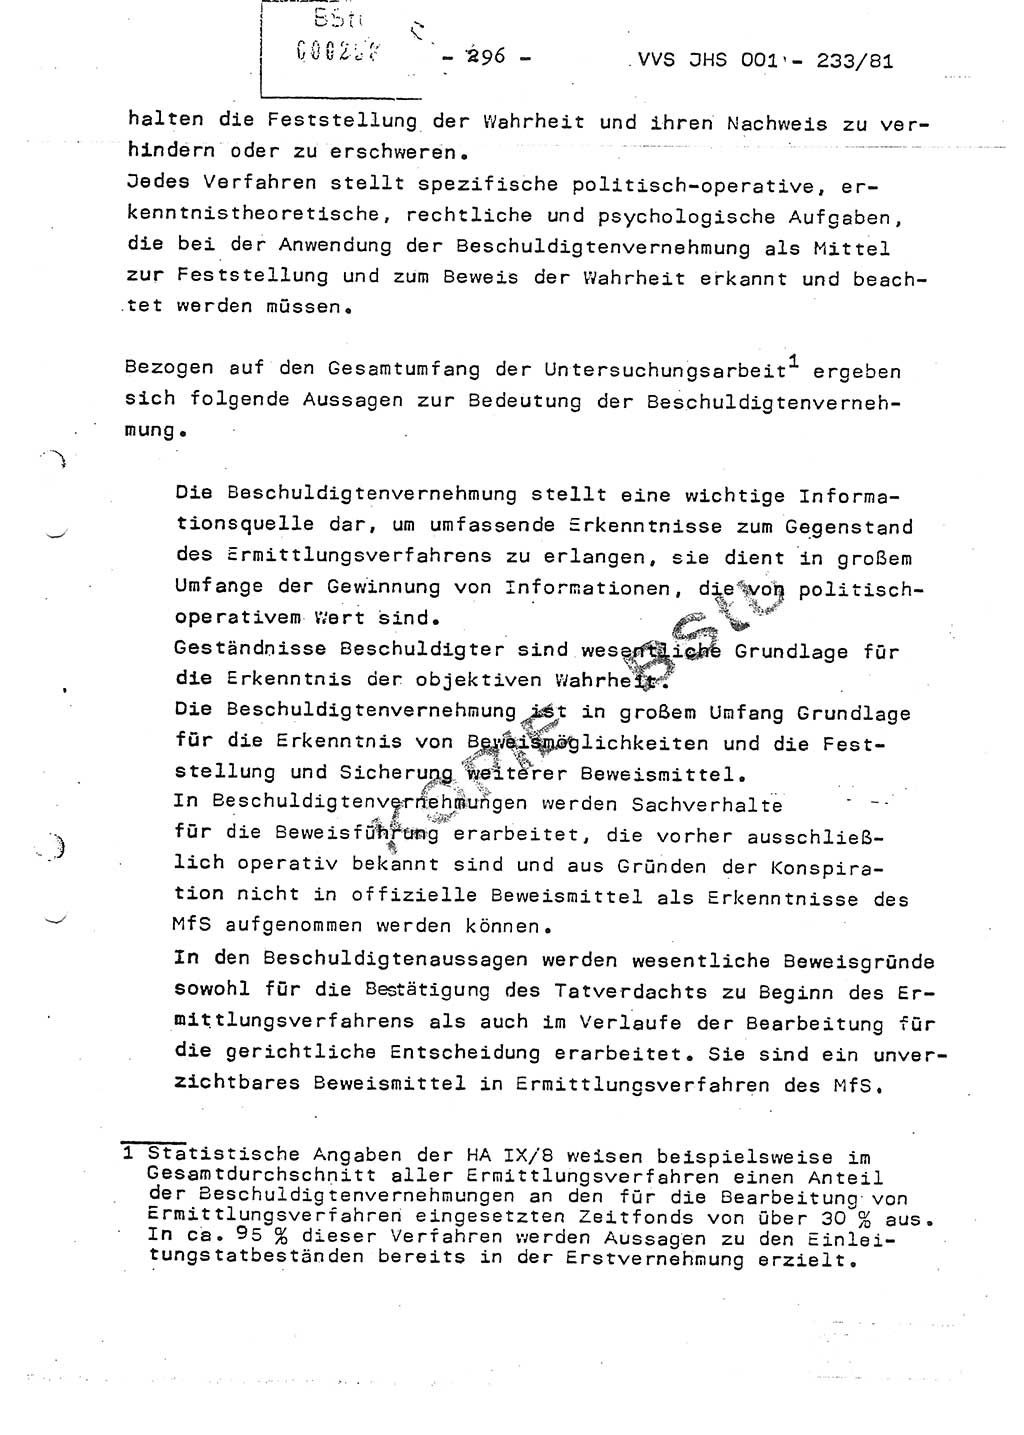 Dissertation Oberstleutnant Horst Zank (JHS), Oberstleutnant Dr. Karl-Heinz Knoblauch (JHS), Oberstleutnant Gustav-Adolf Kowalewski (HA Ⅸ), Oberstleutnant Wolfgang Plötner (HA Ⅸ), Ministerium für Staatssicherheit (MfS) [Deutsche Demokratische Republik (DDR)], Juristische Hochschule (JHS), Vertrauliche Verschlußsache (VVS) o001-233/81, Potsdam 1981, Blatt 296 (Diss. MfS DDR JHS VVS o001-233/81 1981, Bl. 296)